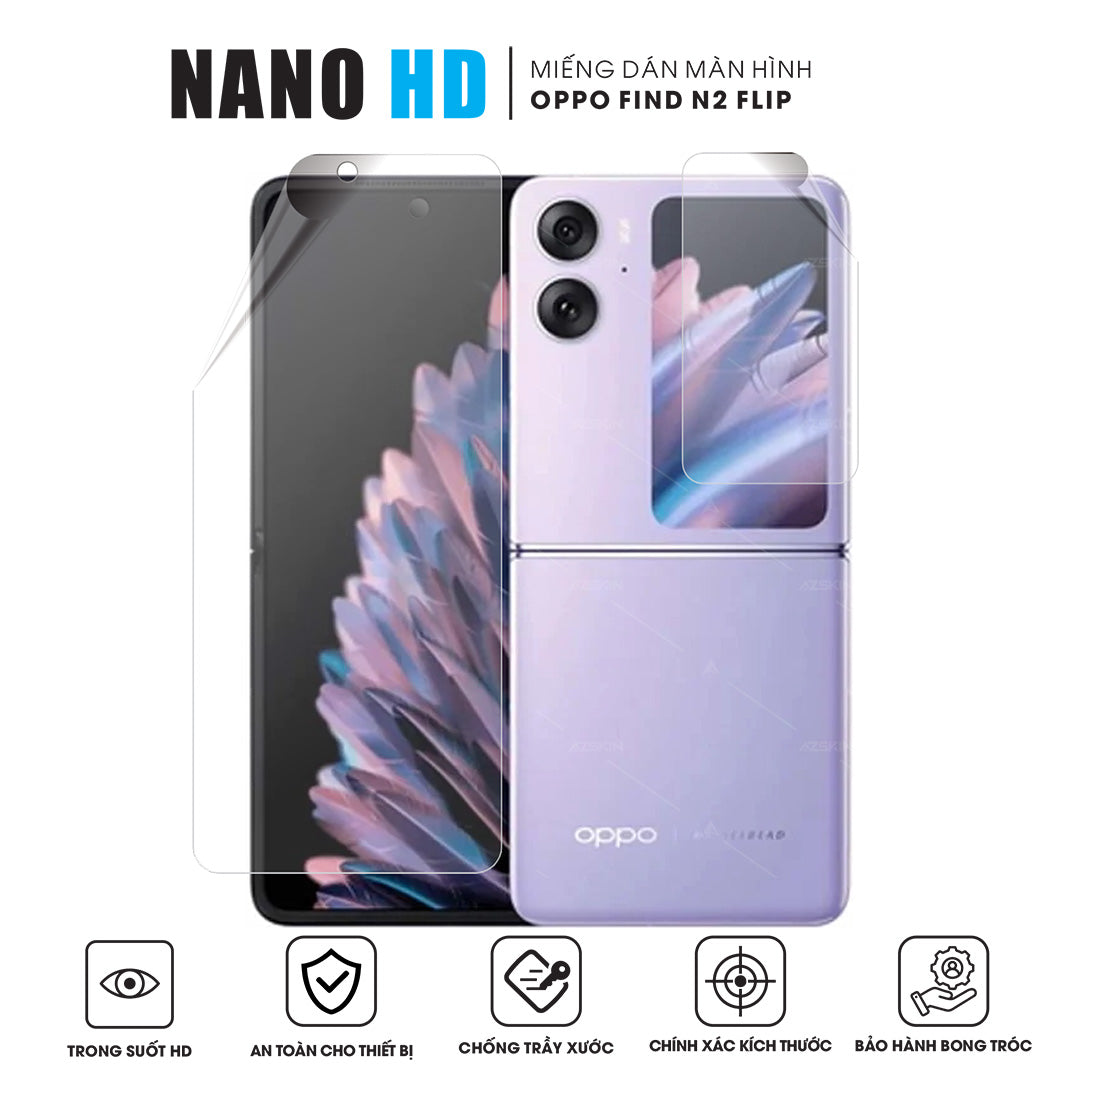 Miếng dán màn hình điện thoại OPPO Find N2 Flip Nano HD